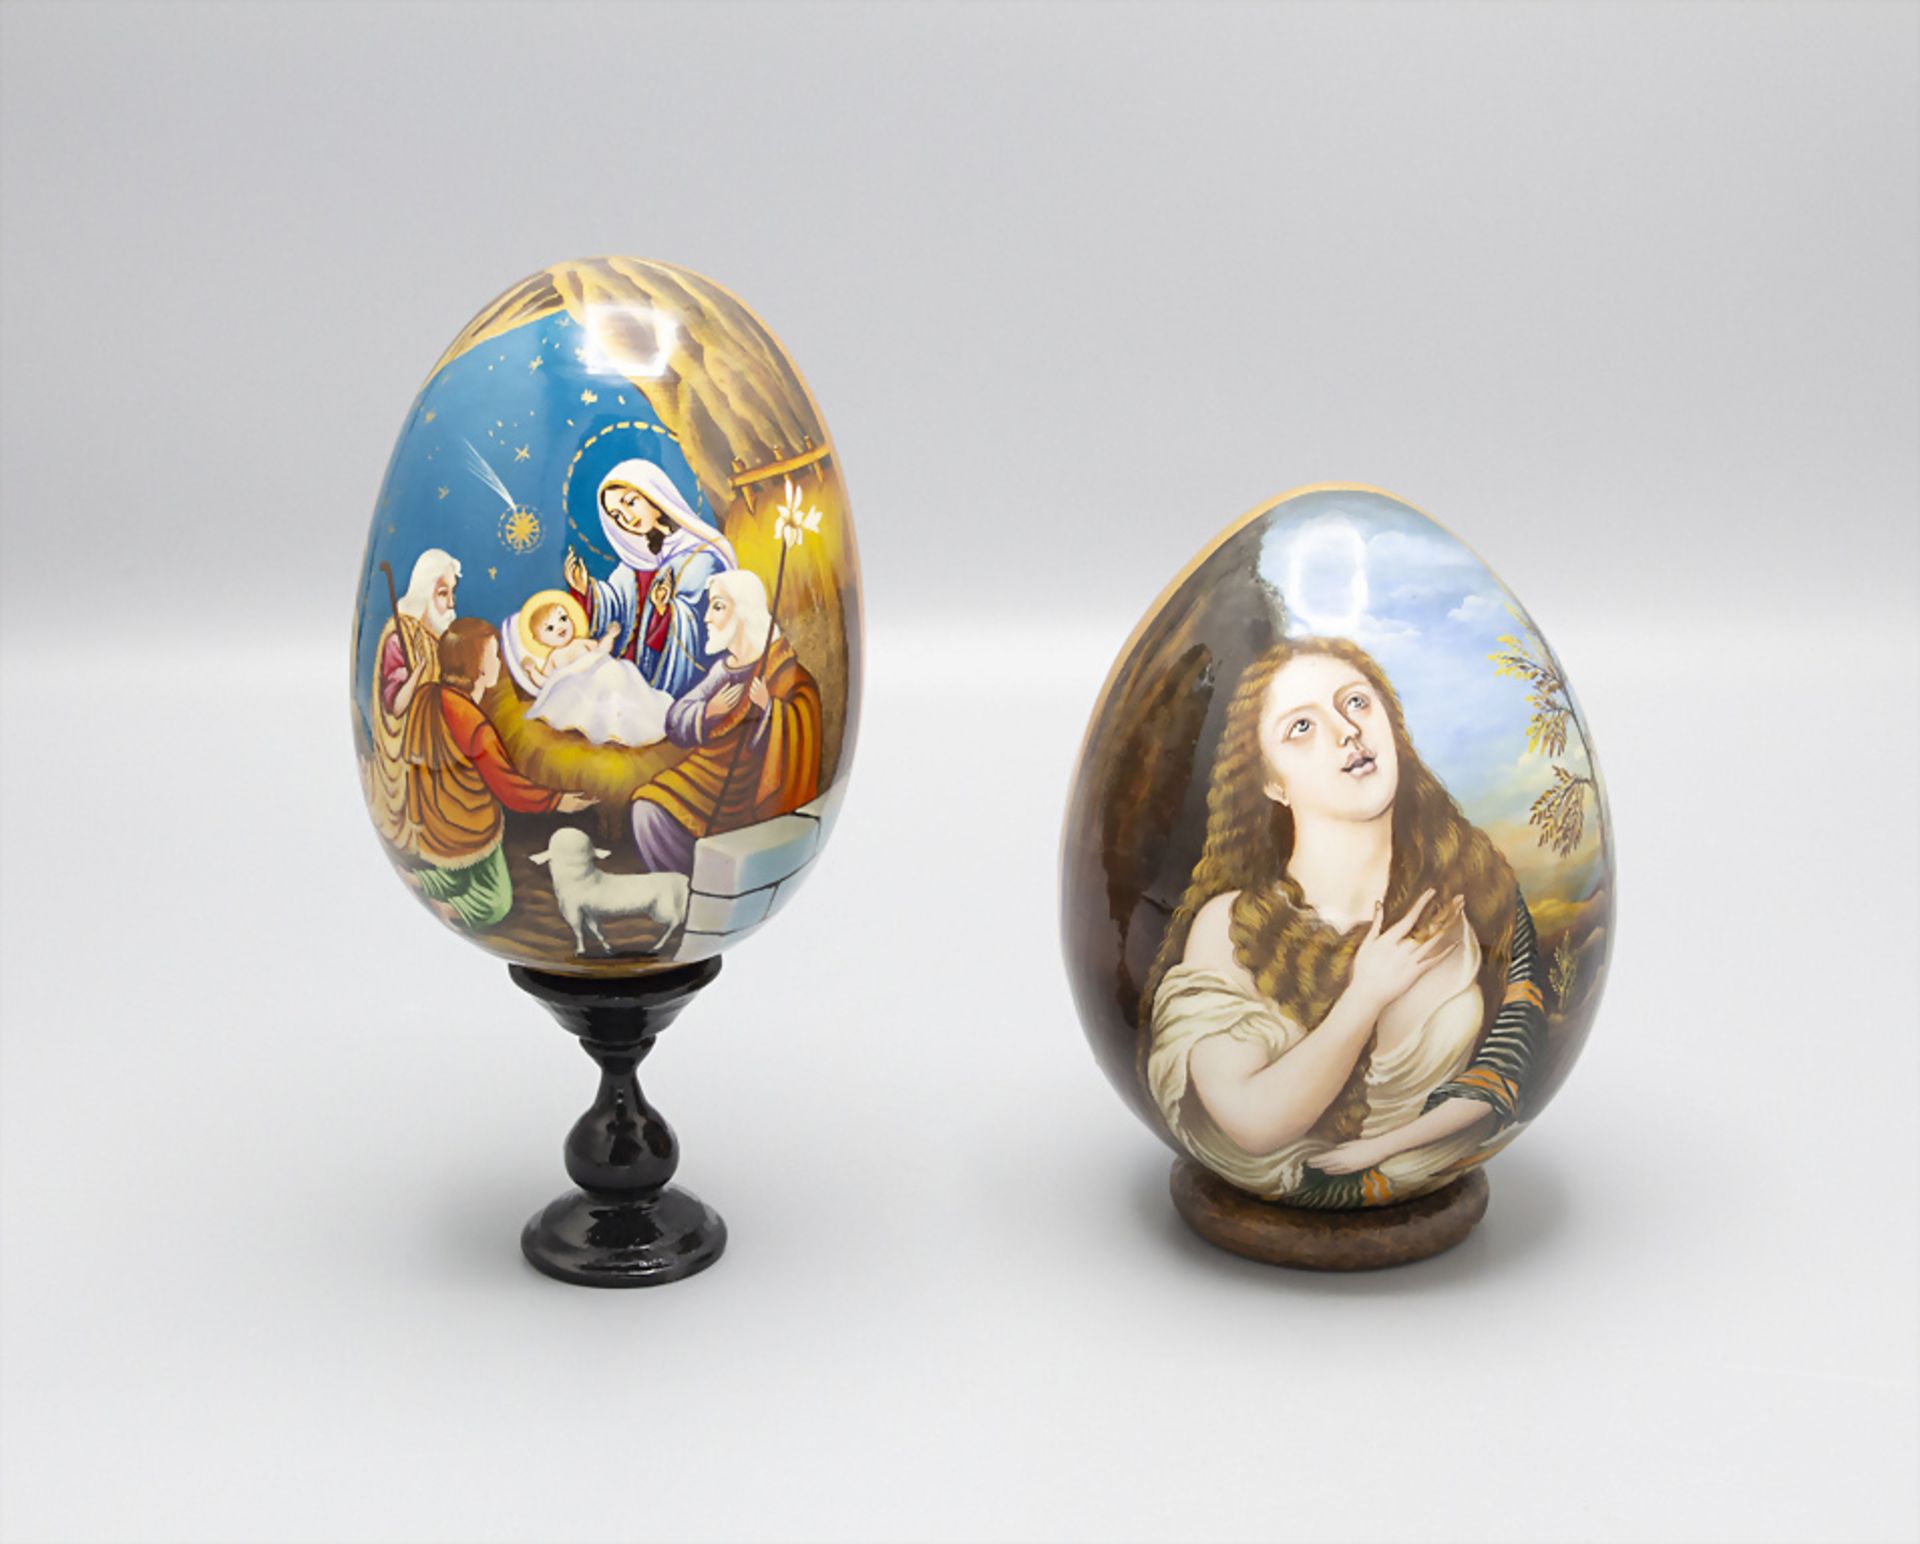 Zwei Ikonen Eier / Two icon eggs, wohl Russland, 20. Jh.